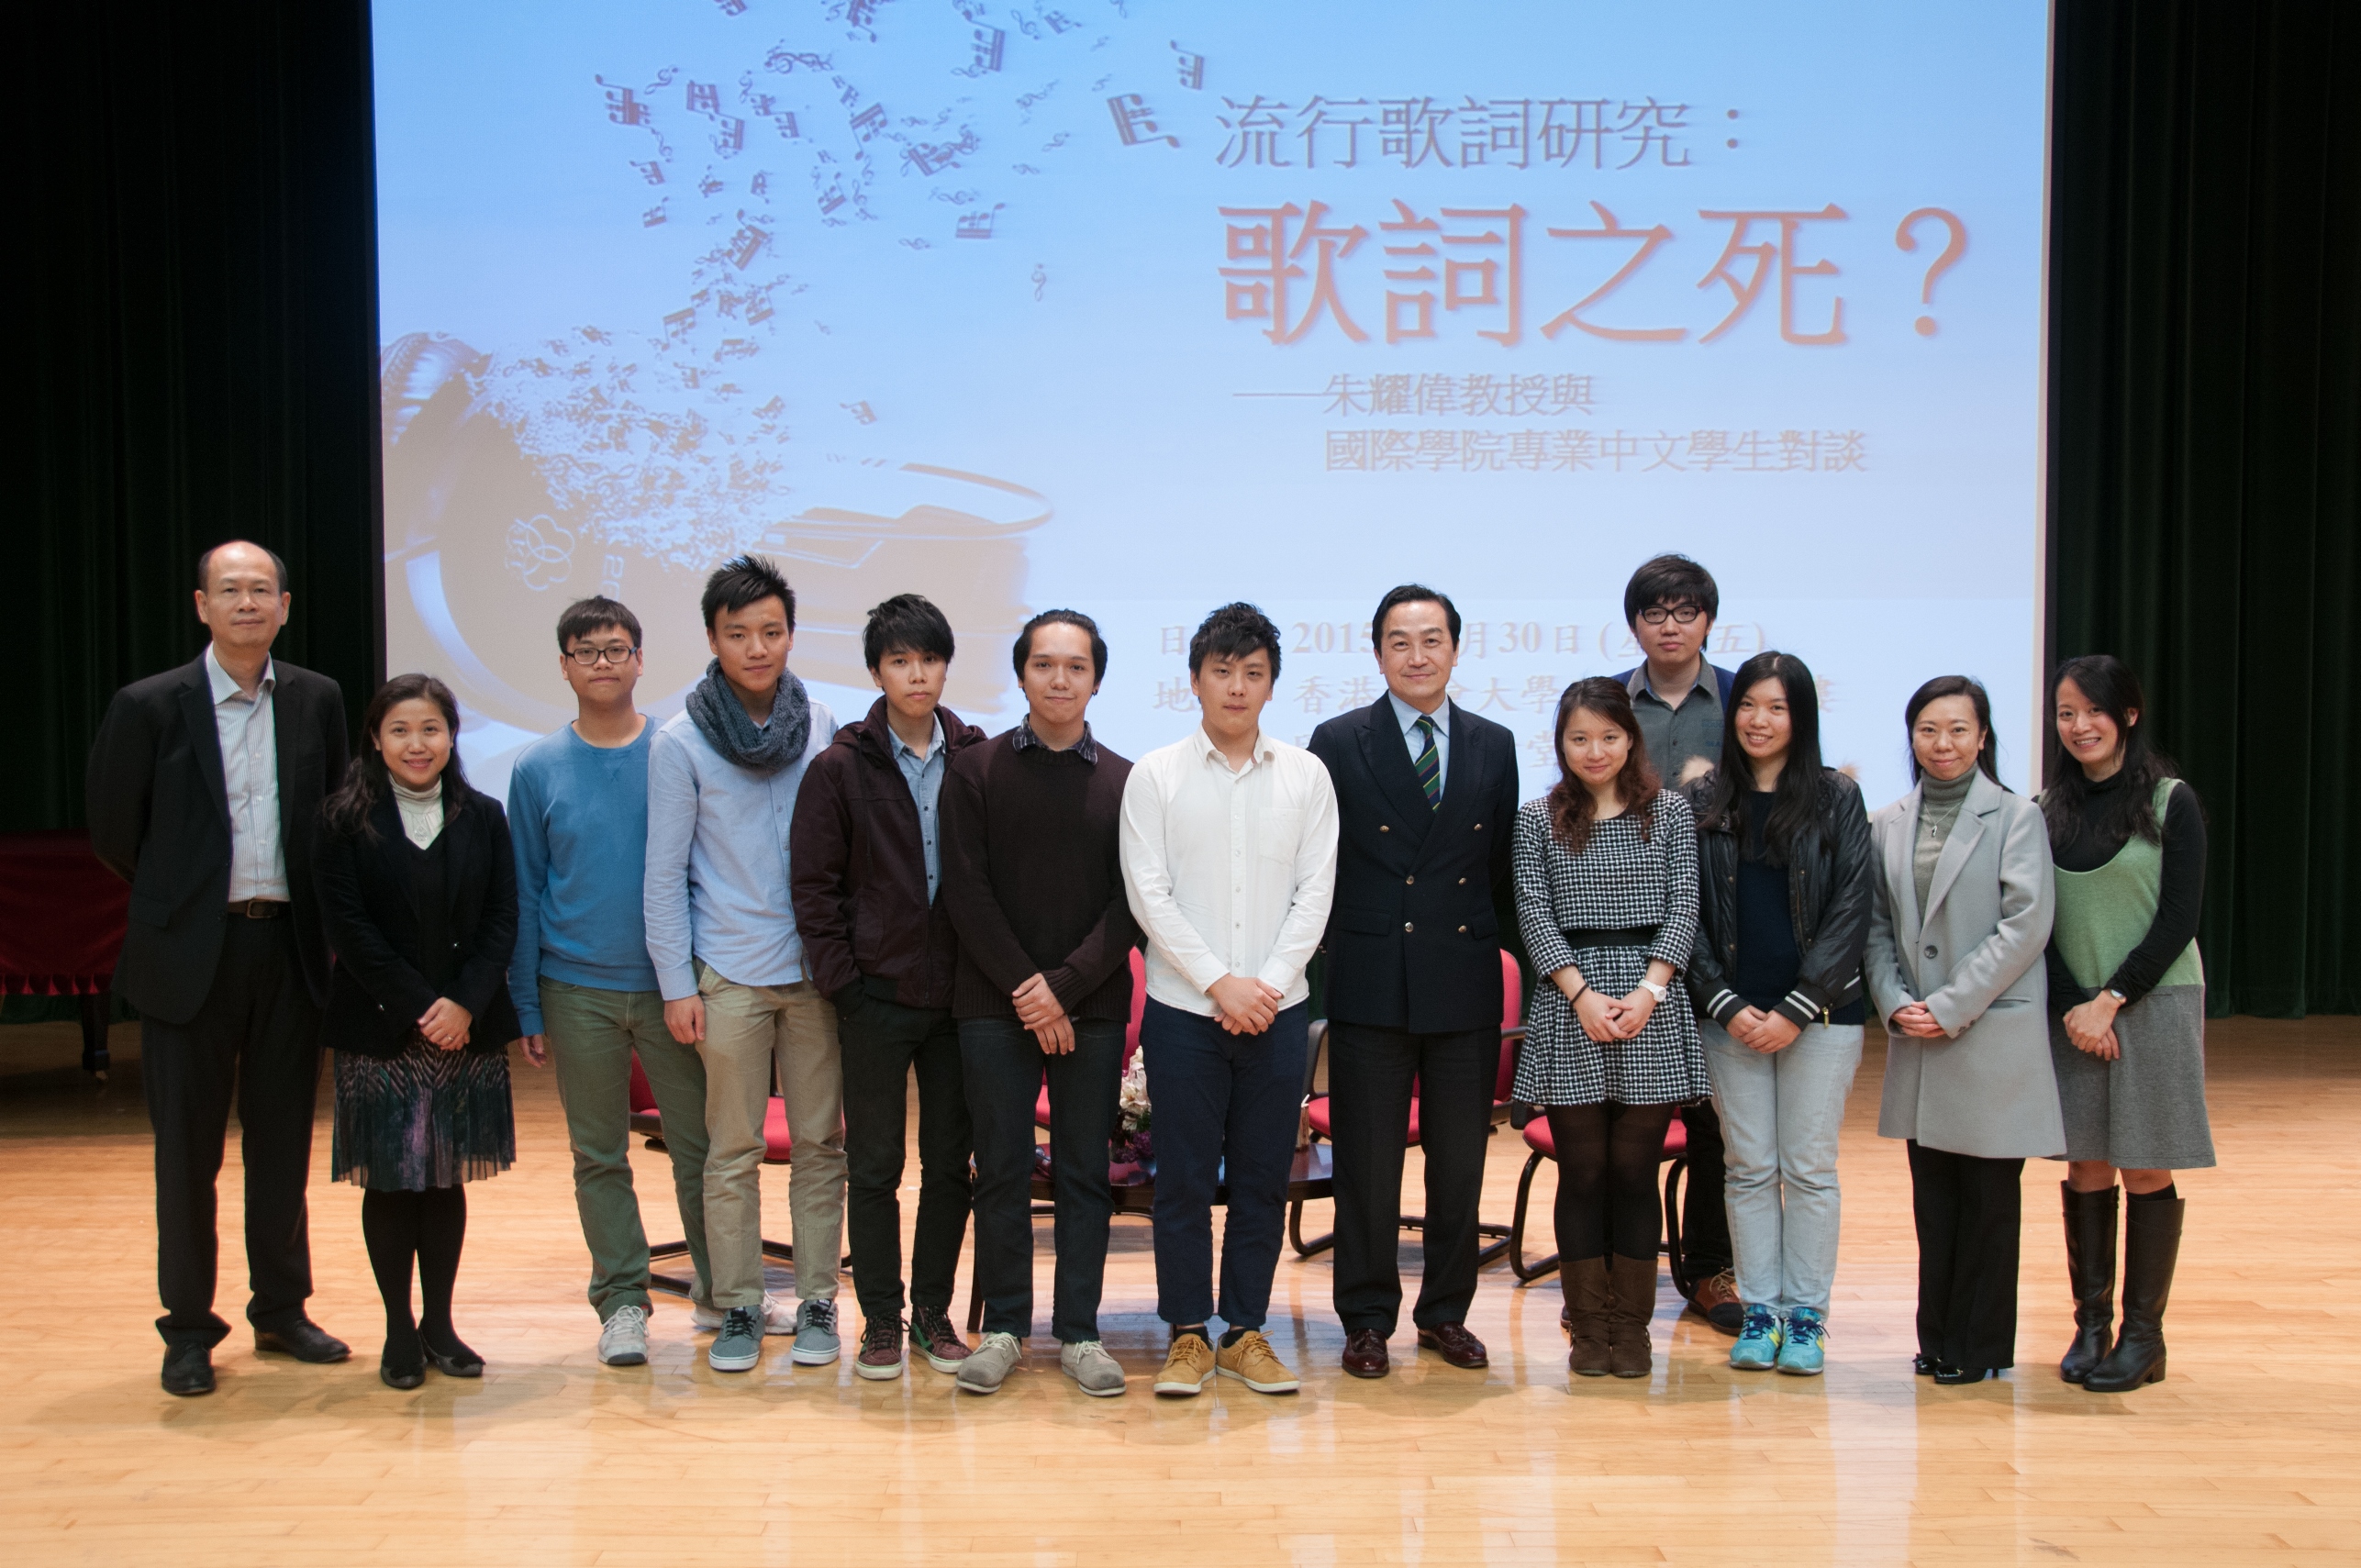 人文及語言學部中文組老師與專業中文學生及講座嘉賓合照